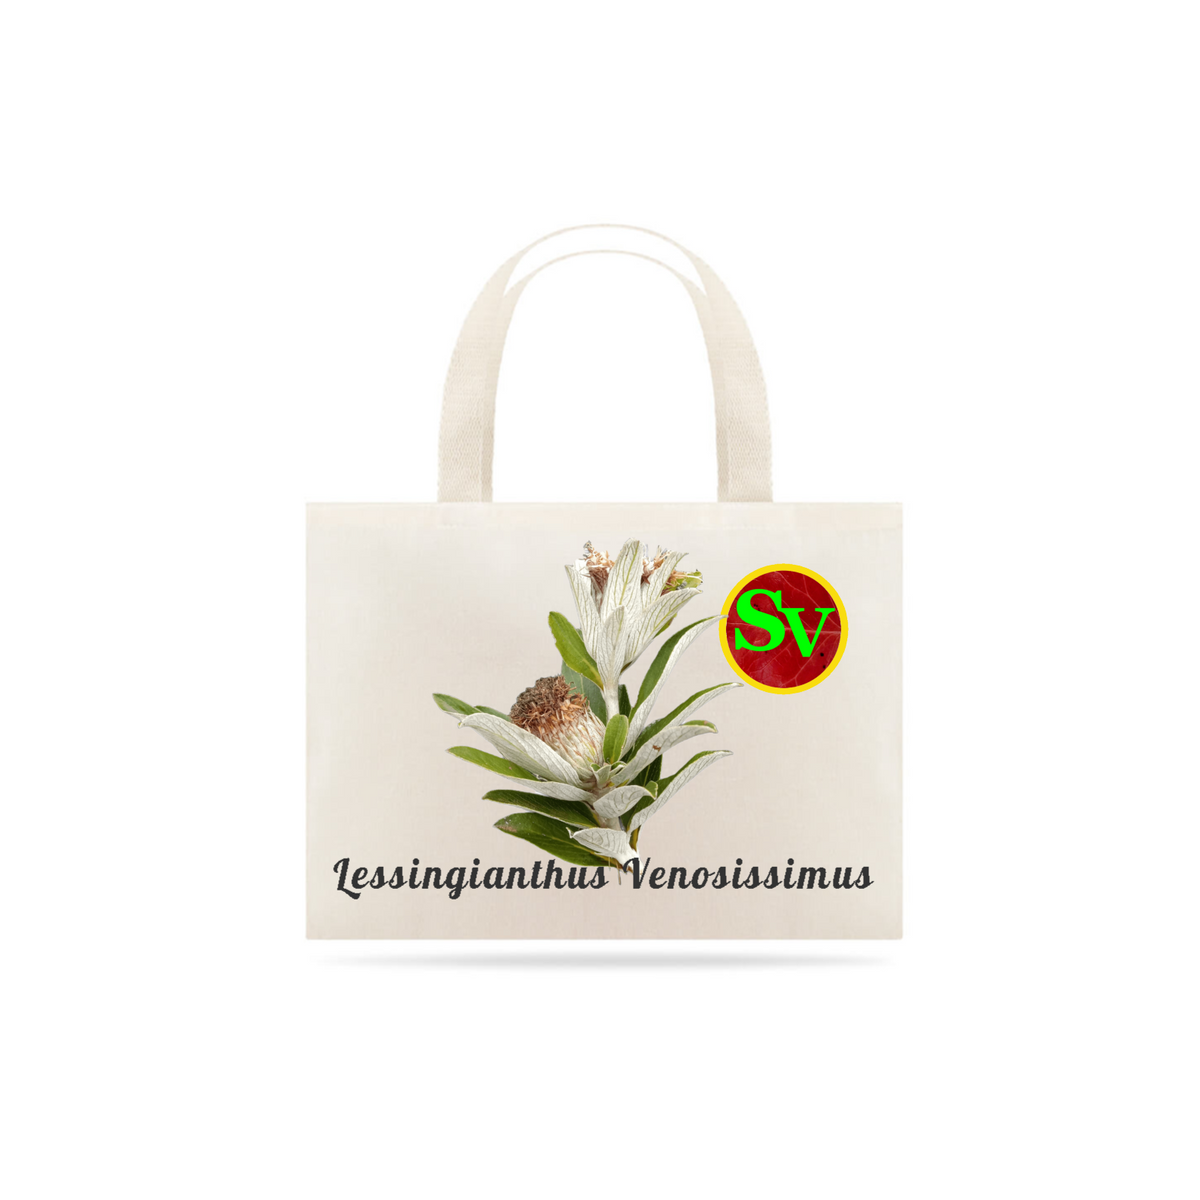 Nome do produto: Sacola com Flor Lessingianthus venosissimus